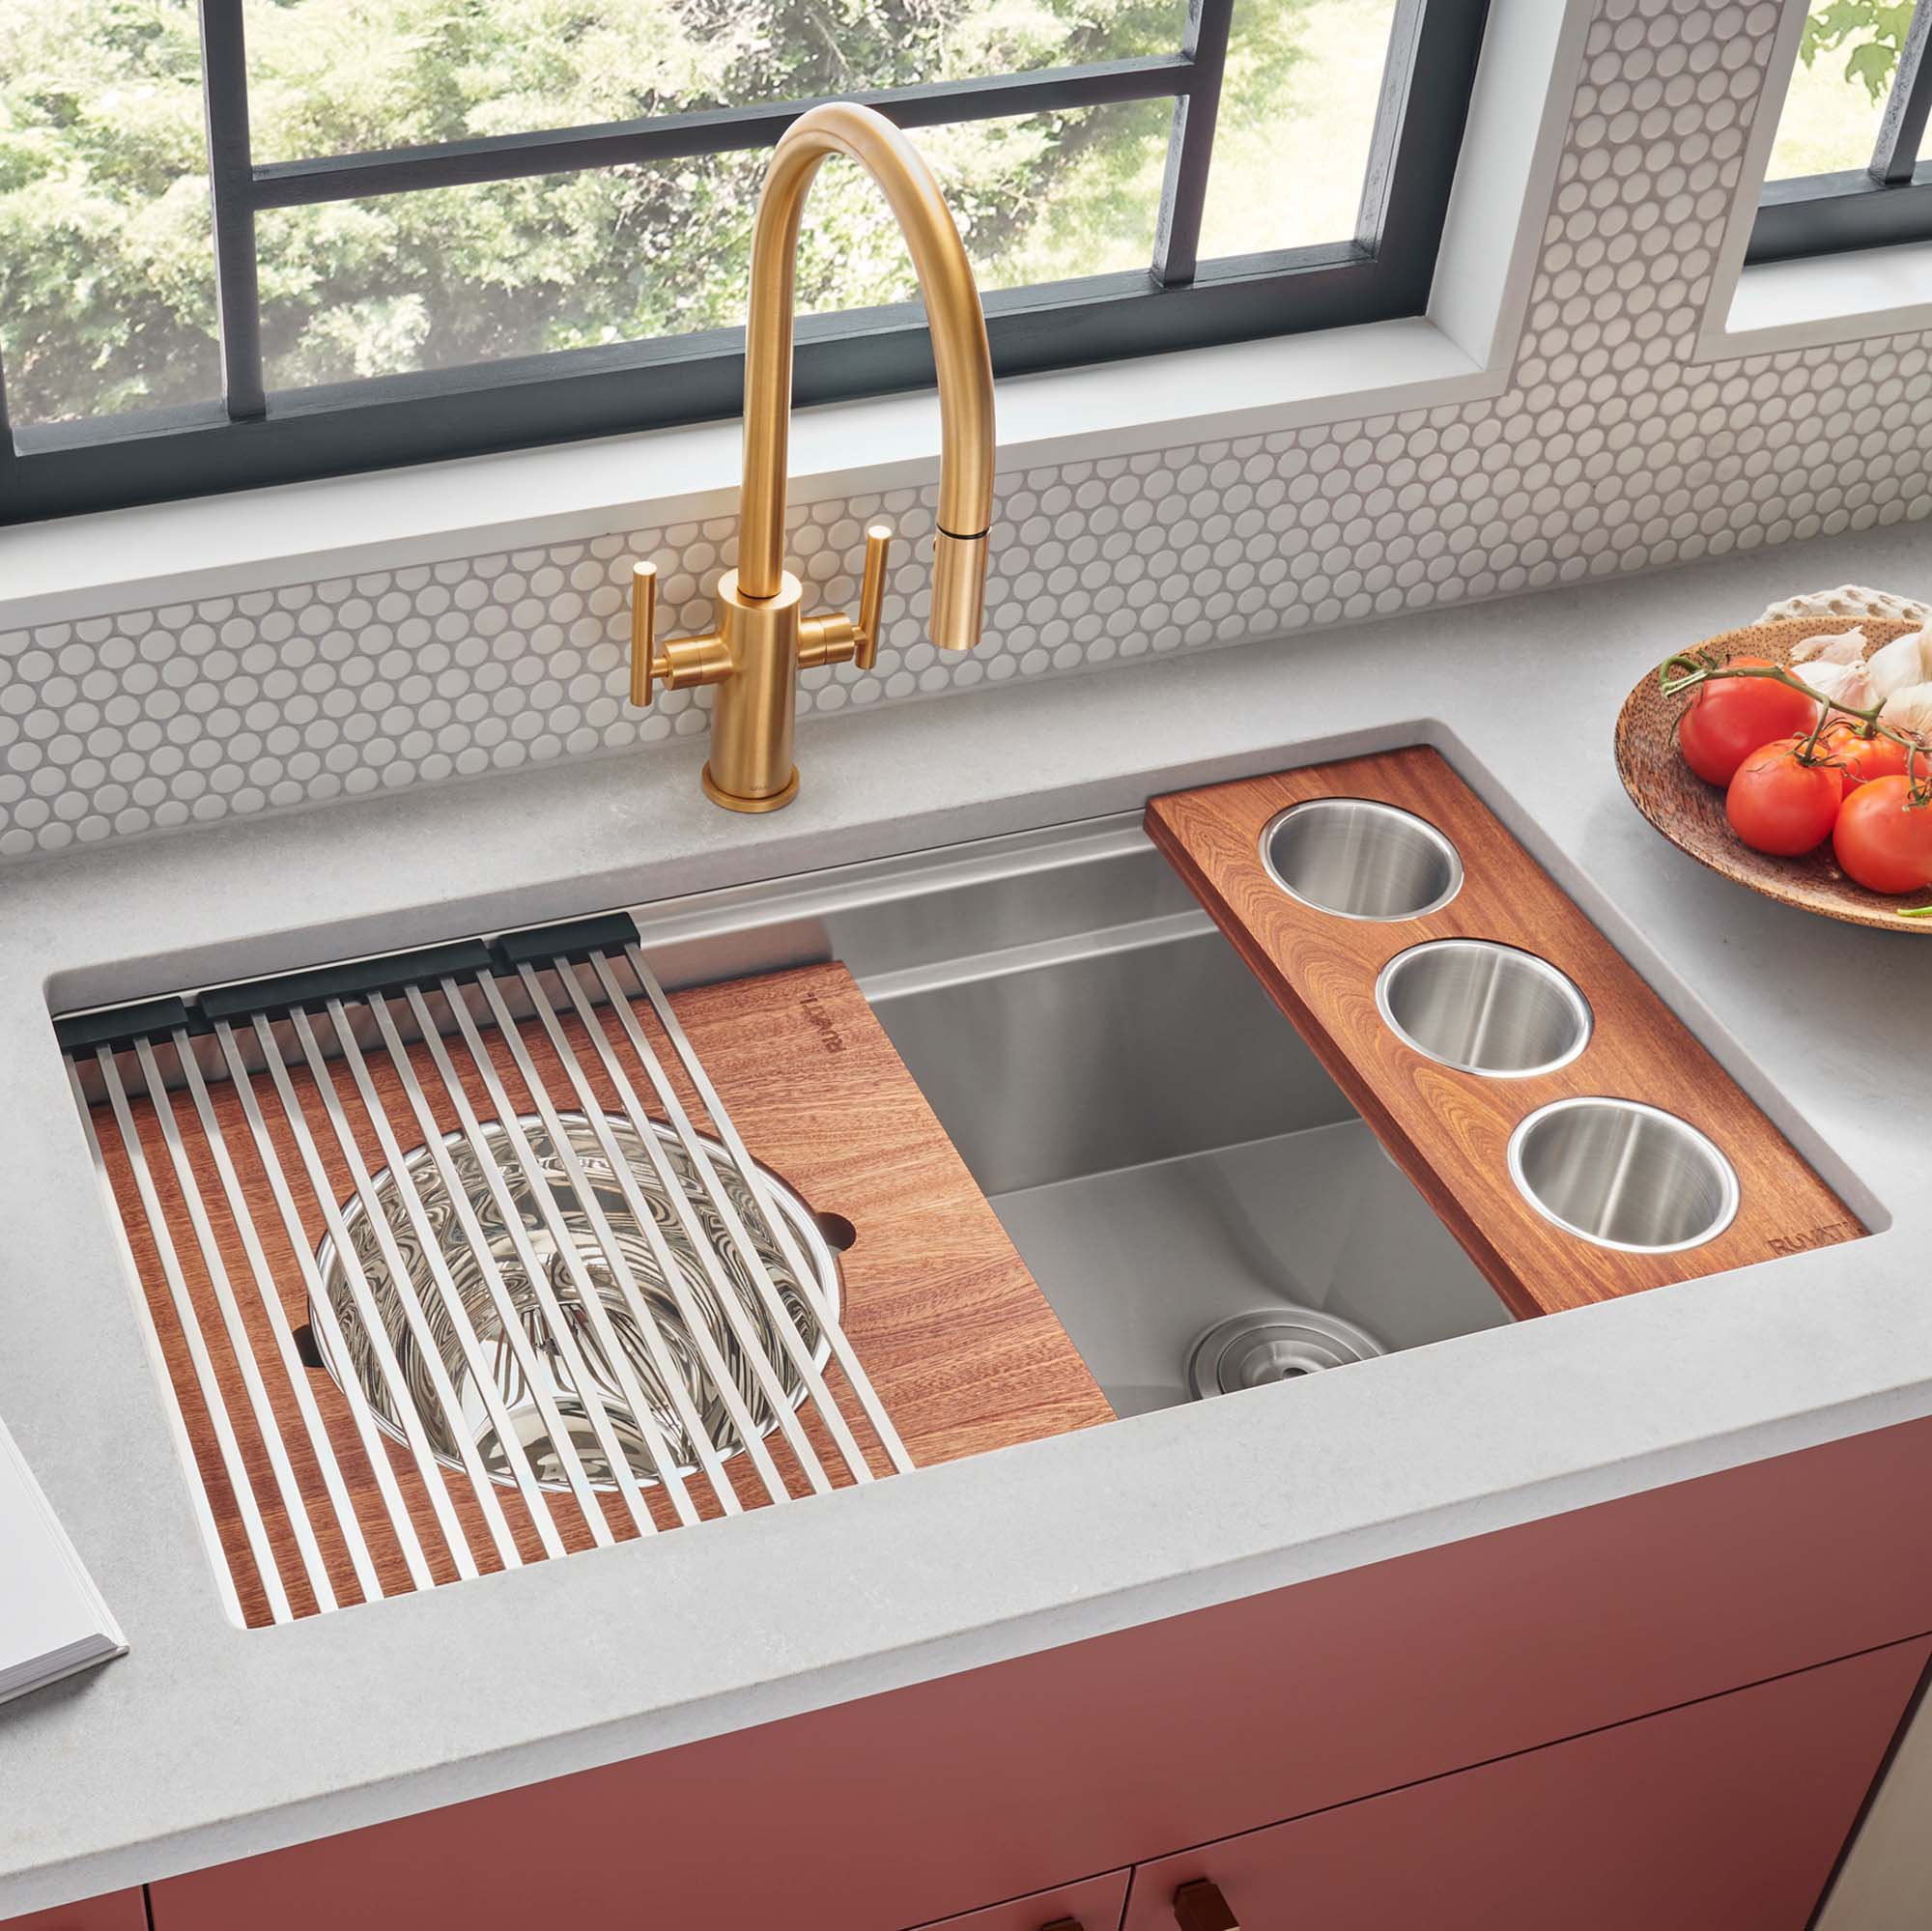 https://assets.wfcdn.com/im/88572592/compr-r85/2260/226015020/33-l-undermount-single-bowl-stainless-steel-kitchen-sink.jpg